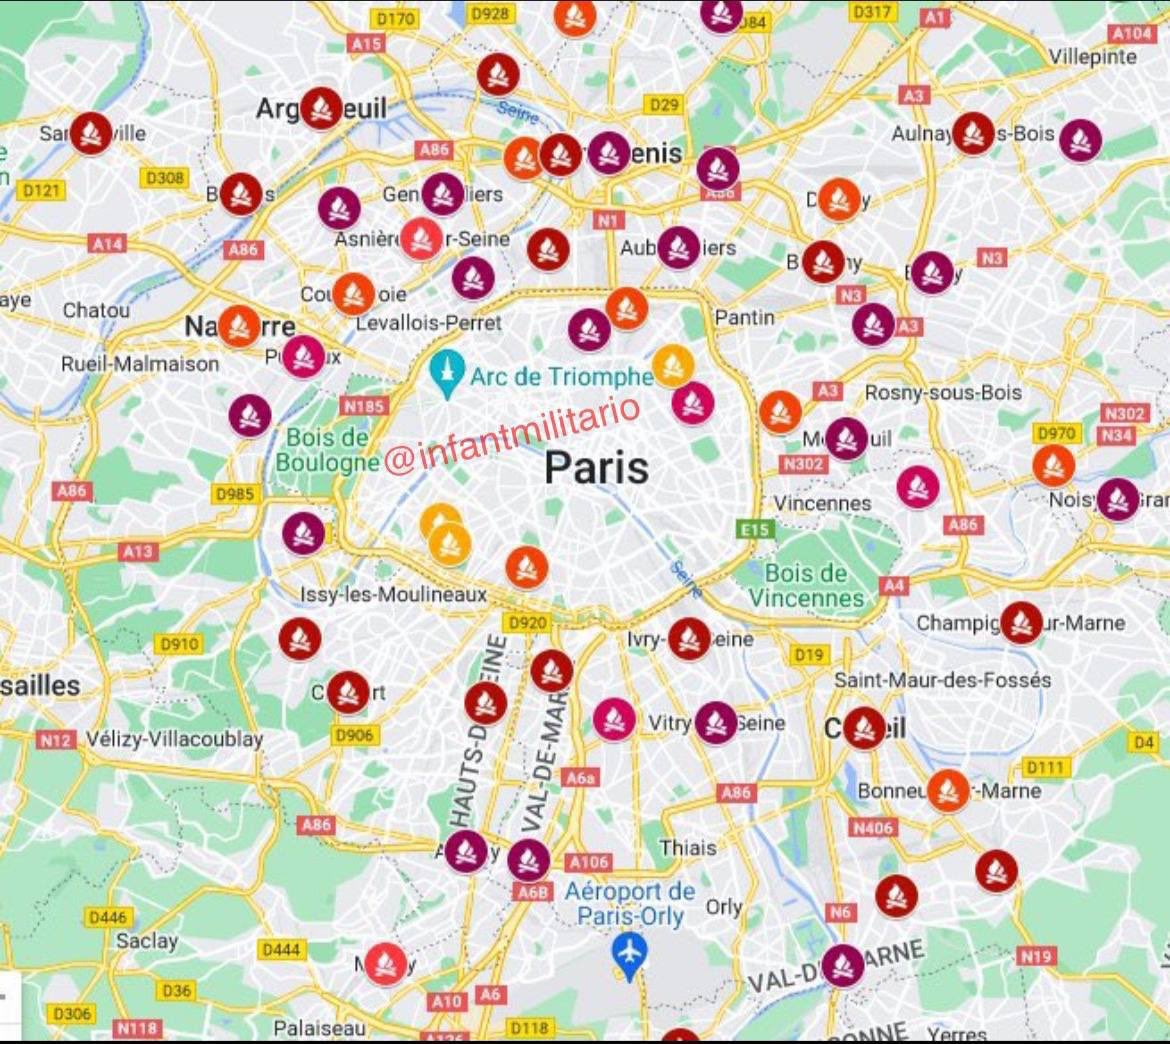 خريطة الحرائق وأعمال الشغب في منطقة العاصمة باريس حاليا

#فرنسا🔥🇫🇷